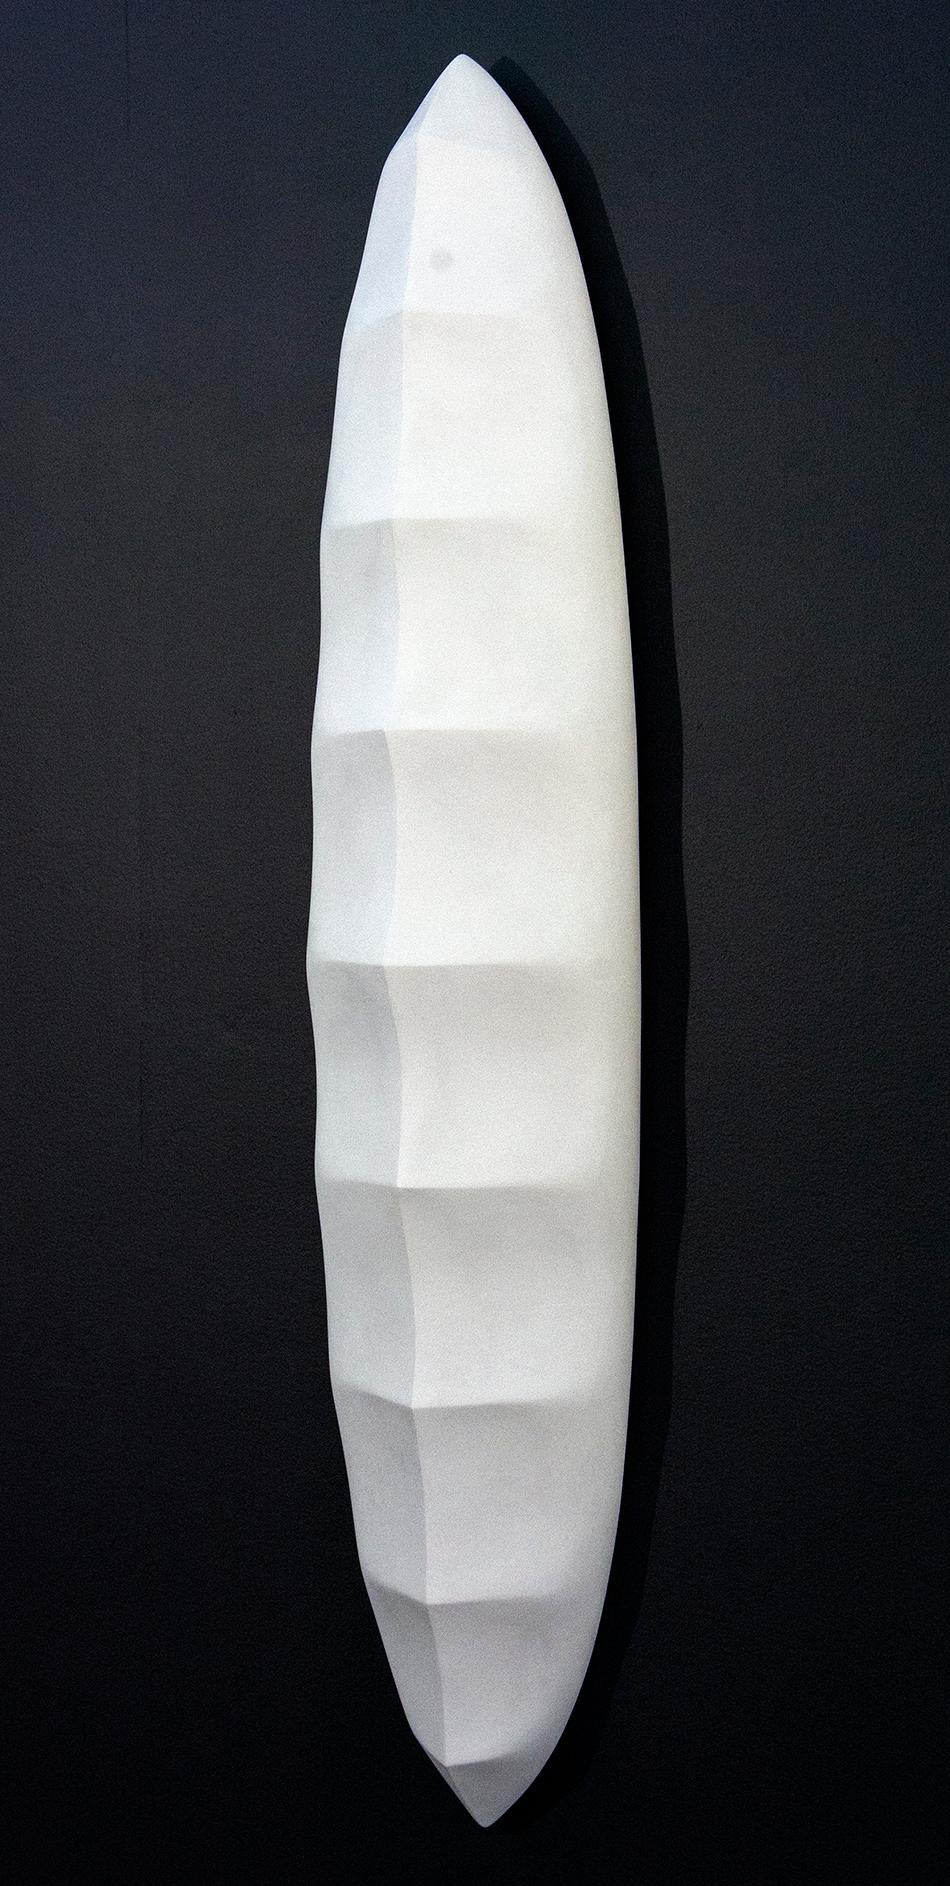 Biomorphic No 3 – helles, weißes, minimalistisches, abstraktes Wandrelief aus Gips und Wachs – Sculpture von Jana Osterman